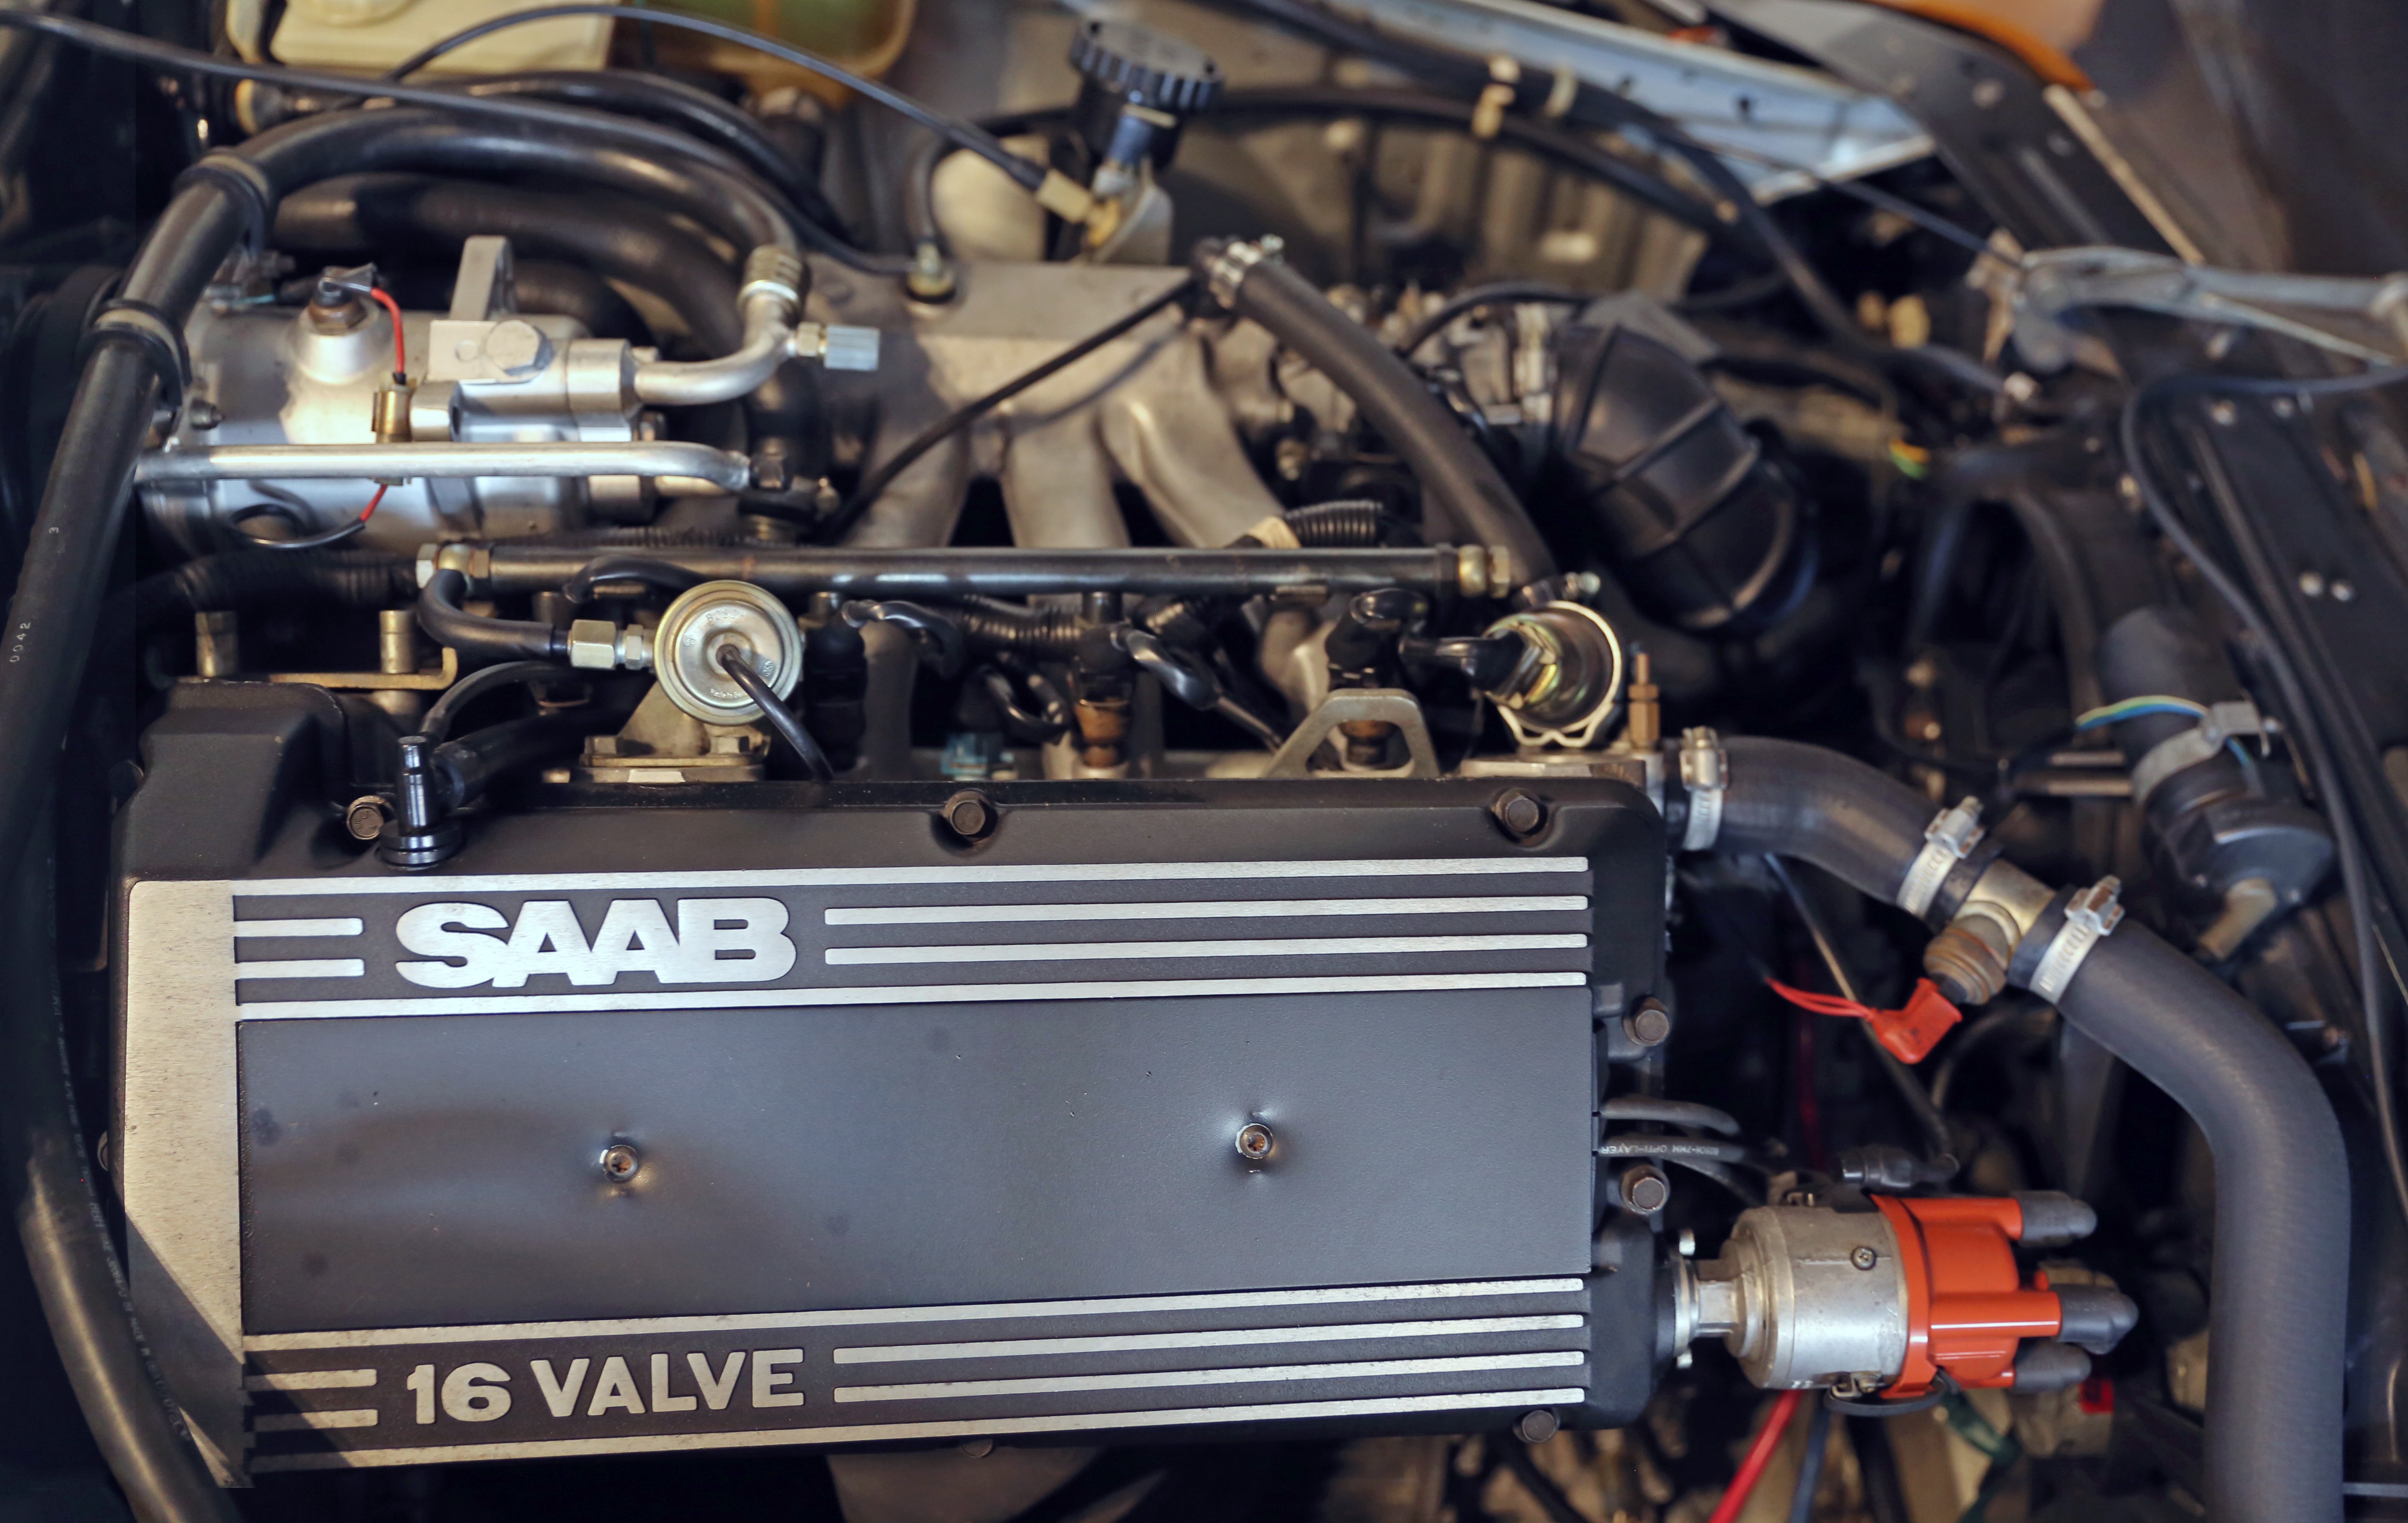 Saab 9 3 Engine Diagram 2 Saab H Engine Of Saab 9 3 Engine Diagram 2